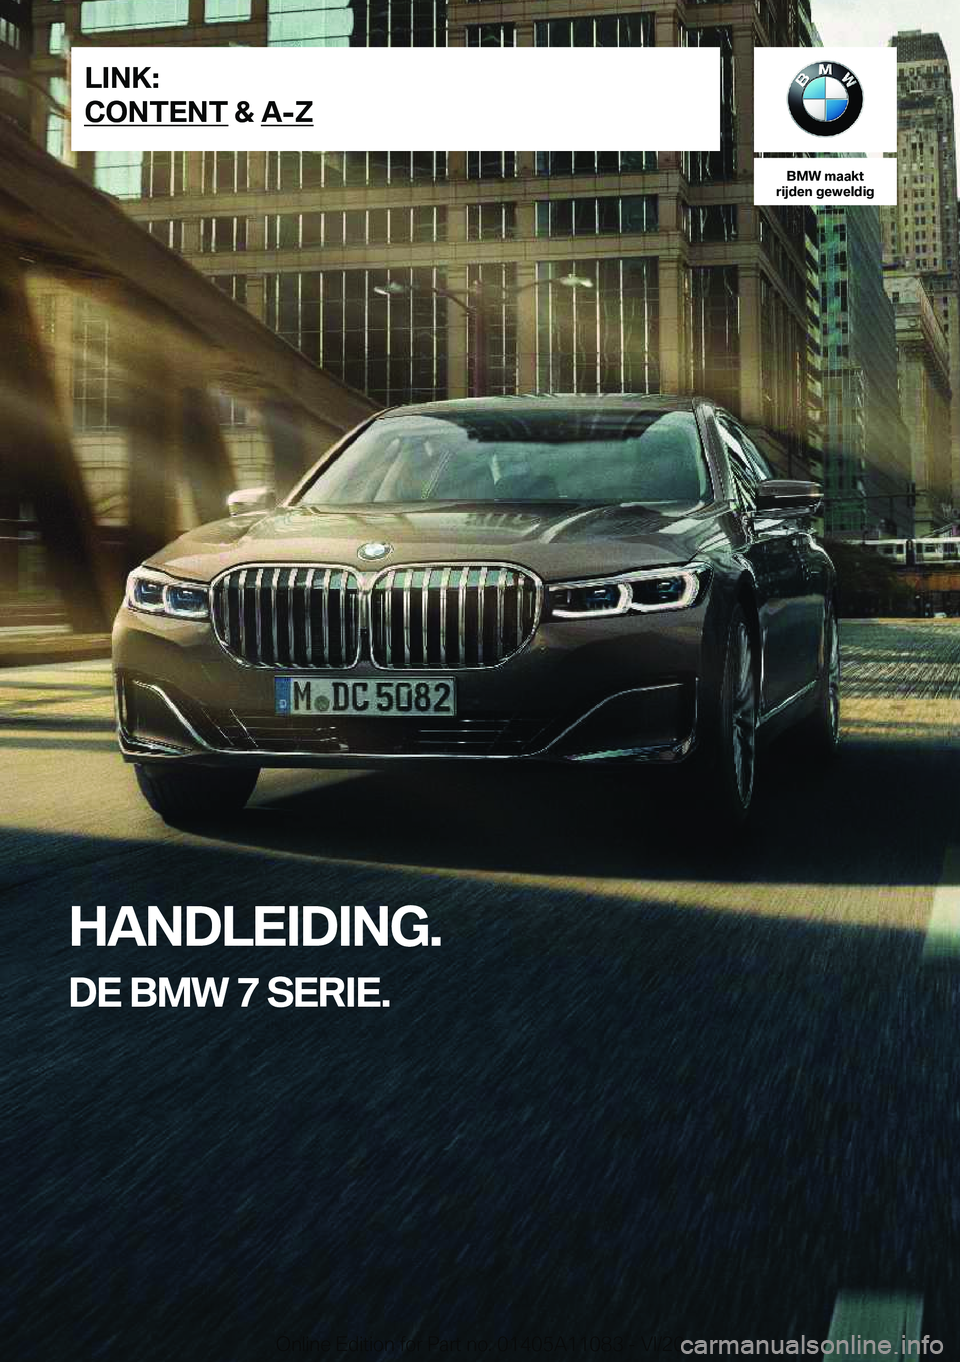 BMW 7 SERIES 2021  Instructieboekjes (in Dutch) �B�M�W��m�a�a�k�t
�r�i�j�d�e�n��g�e�w�e�l�d�i�g
�H�A�N�D�L�E�I�D�I�N�G�.
�D�E��B�M�W��7��S�E�R�I�E�.�L�I�N�K�:
�C�O�N�T�E�N�T��&��A�-�Z�O�n�l�i�n�e��E�d�i�t�i�o�n��f�o�r��P�a�r�t��n�o�.��0